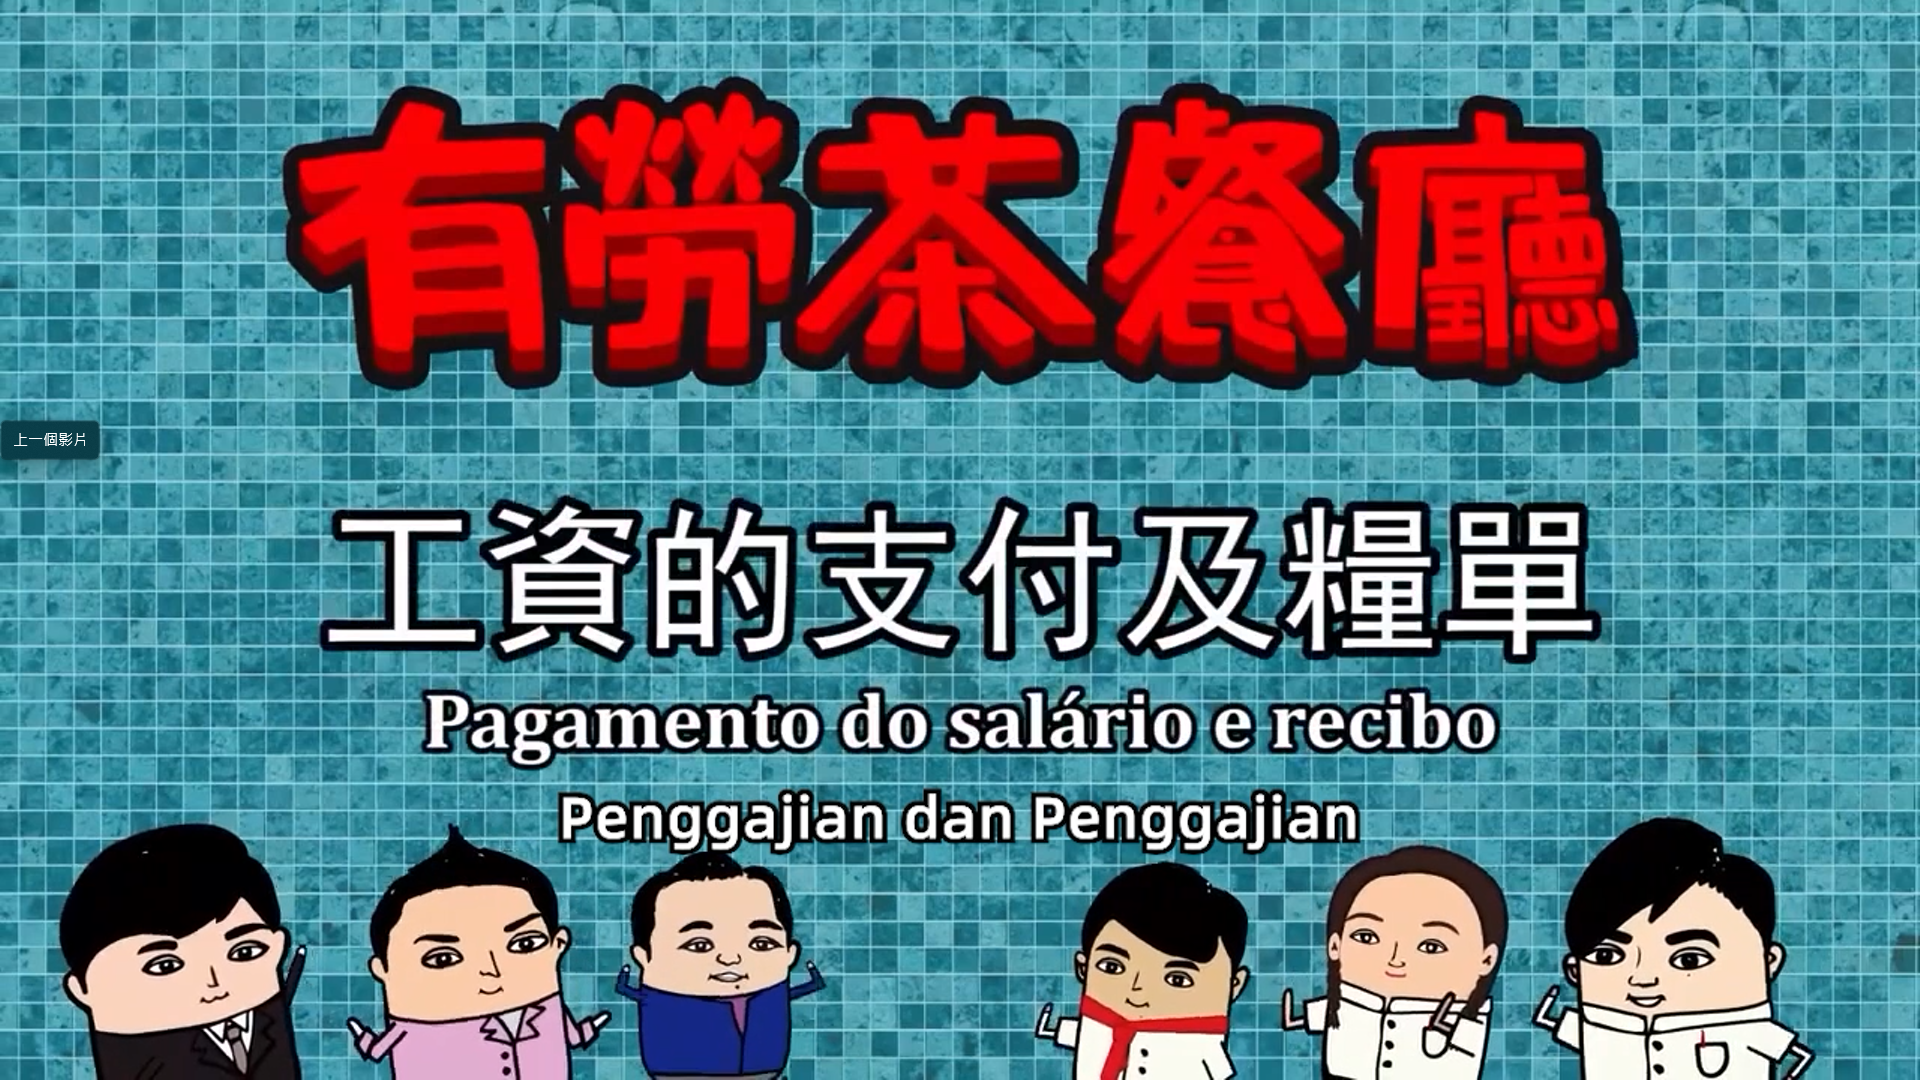 Penggajian dan Penggajian (Pagamento de salário e guias de pagamento)